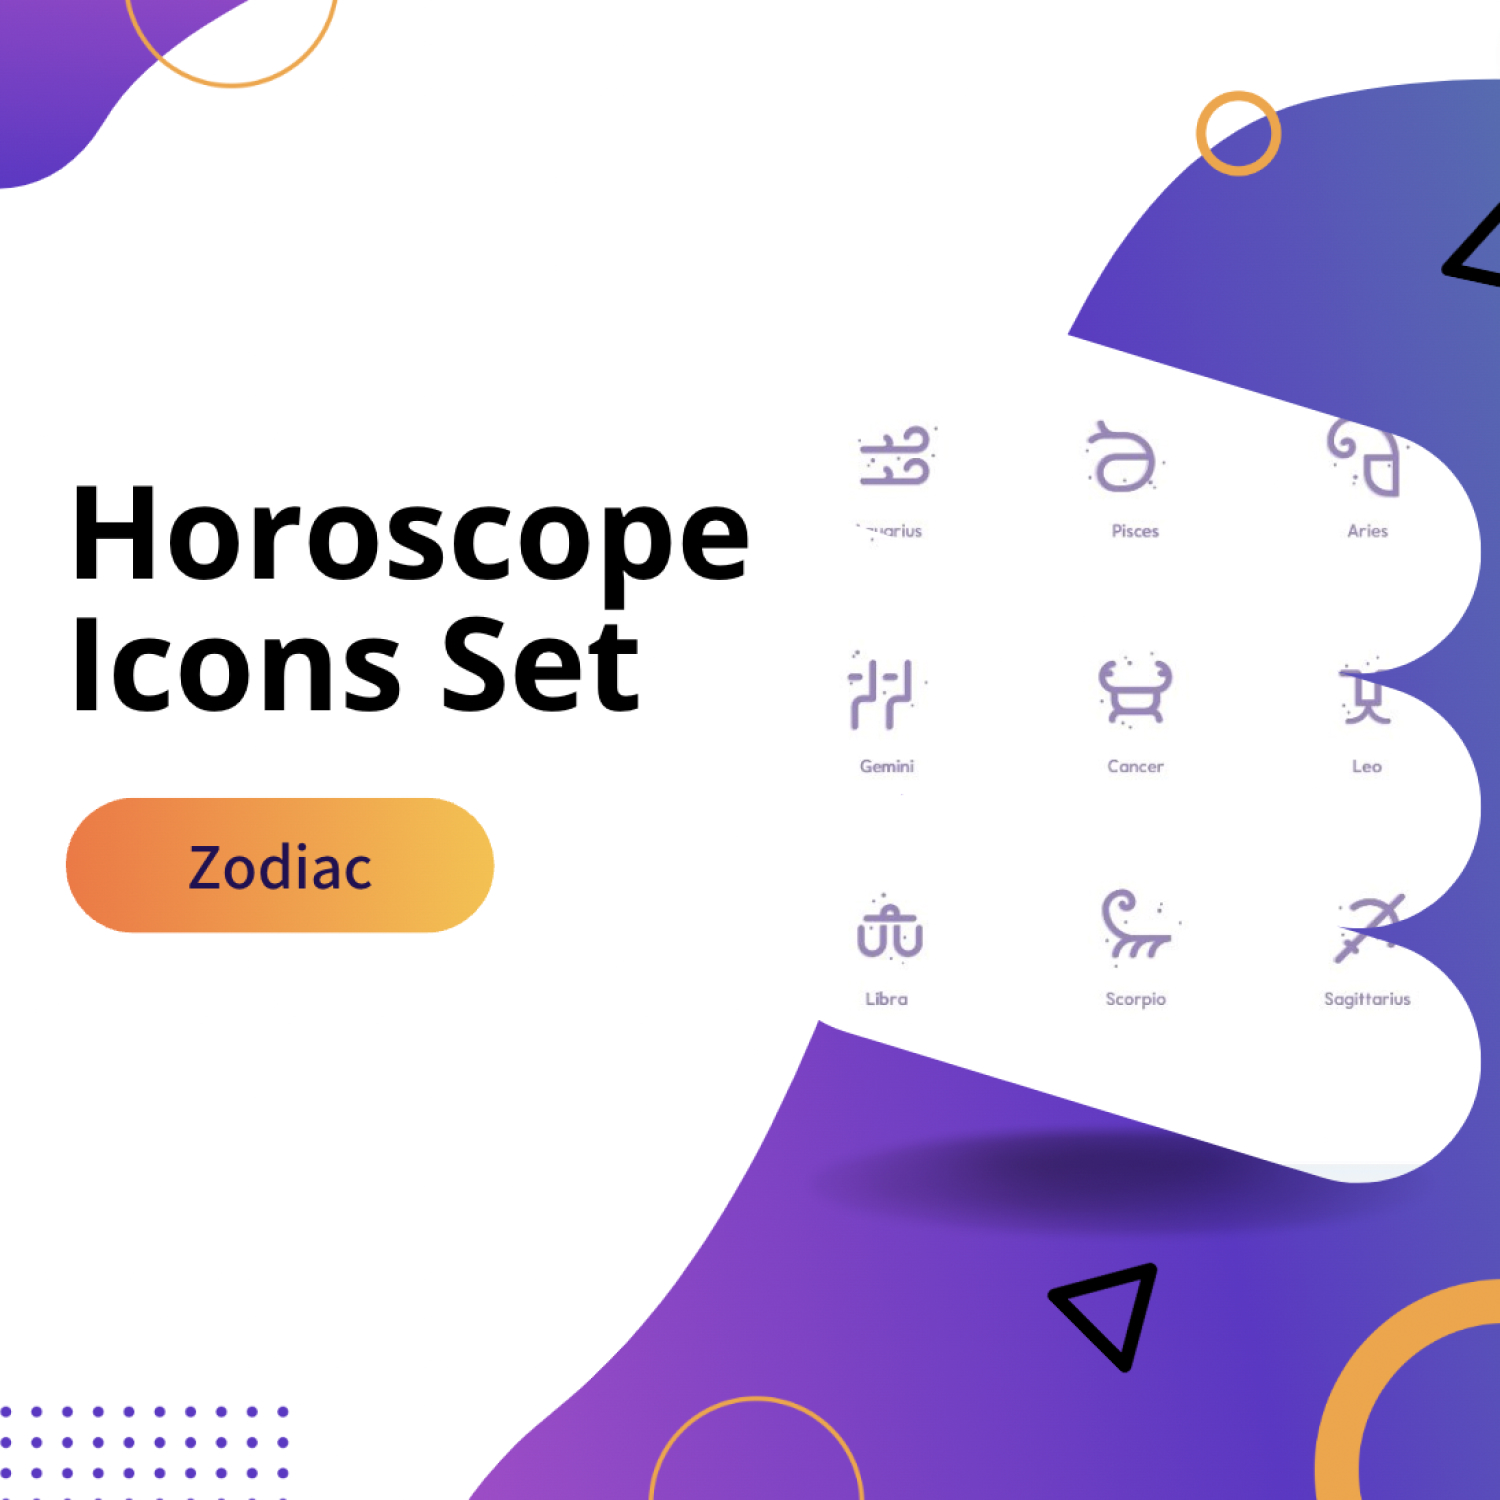 Zodiac - Horoscope Icons Set.